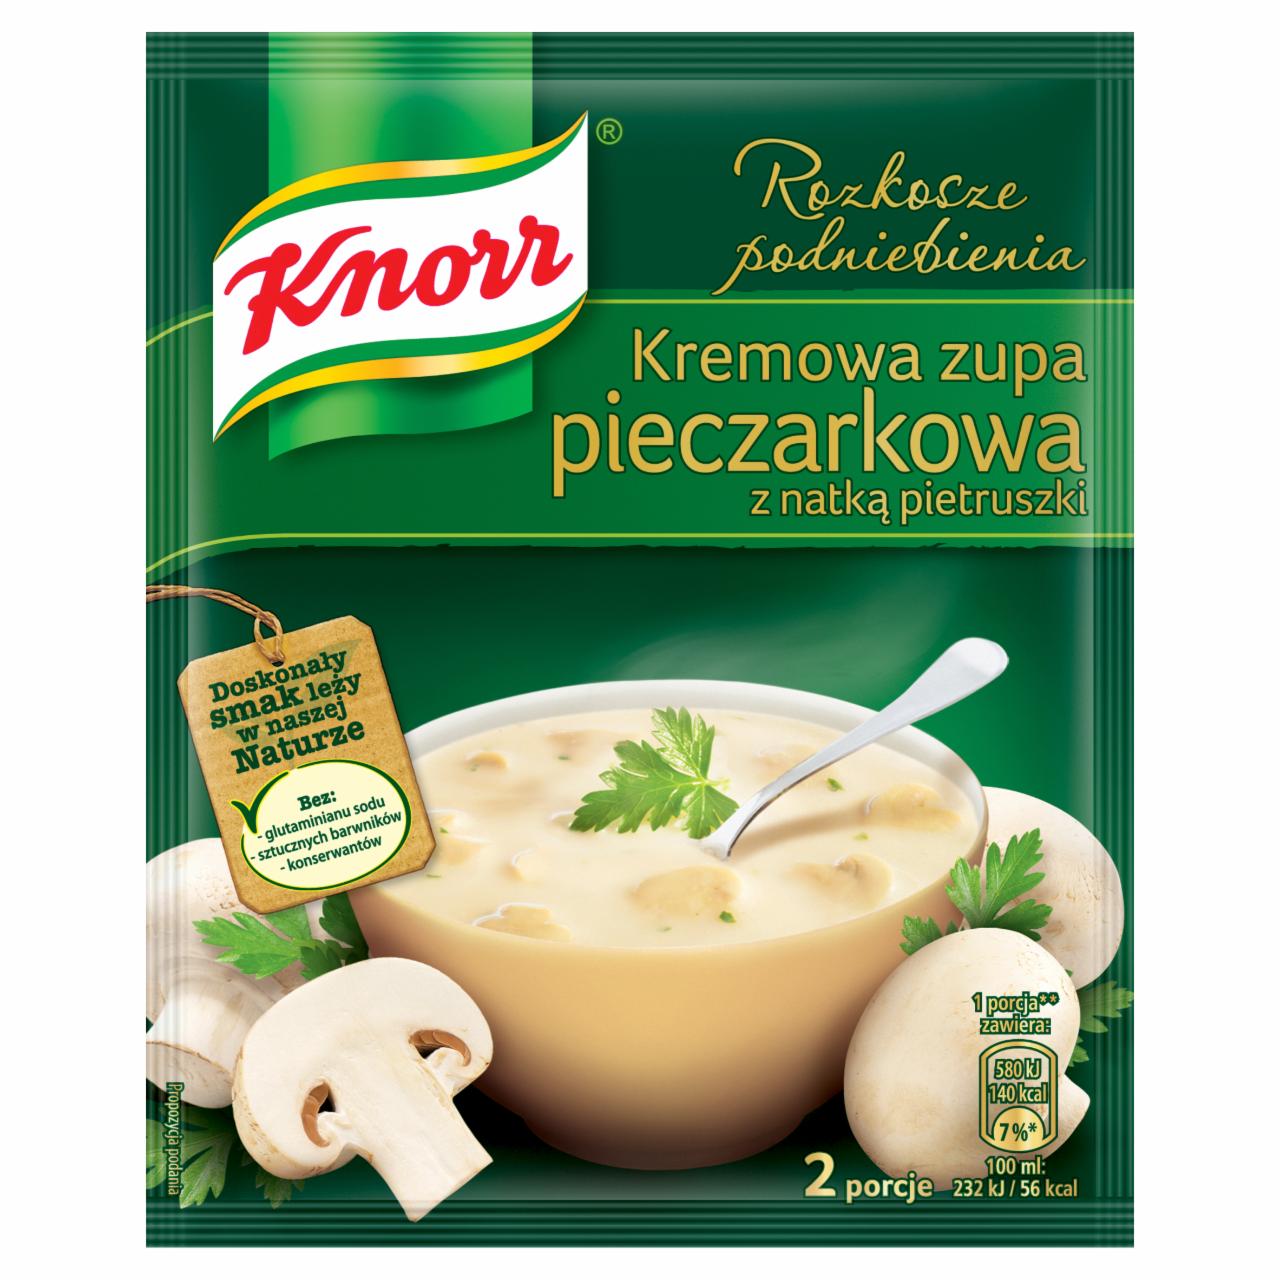 Zdjęcia - Knorr Rozkosze podniebienia Kremowa zupa pieczarkowa z natką pietruszki 49 g